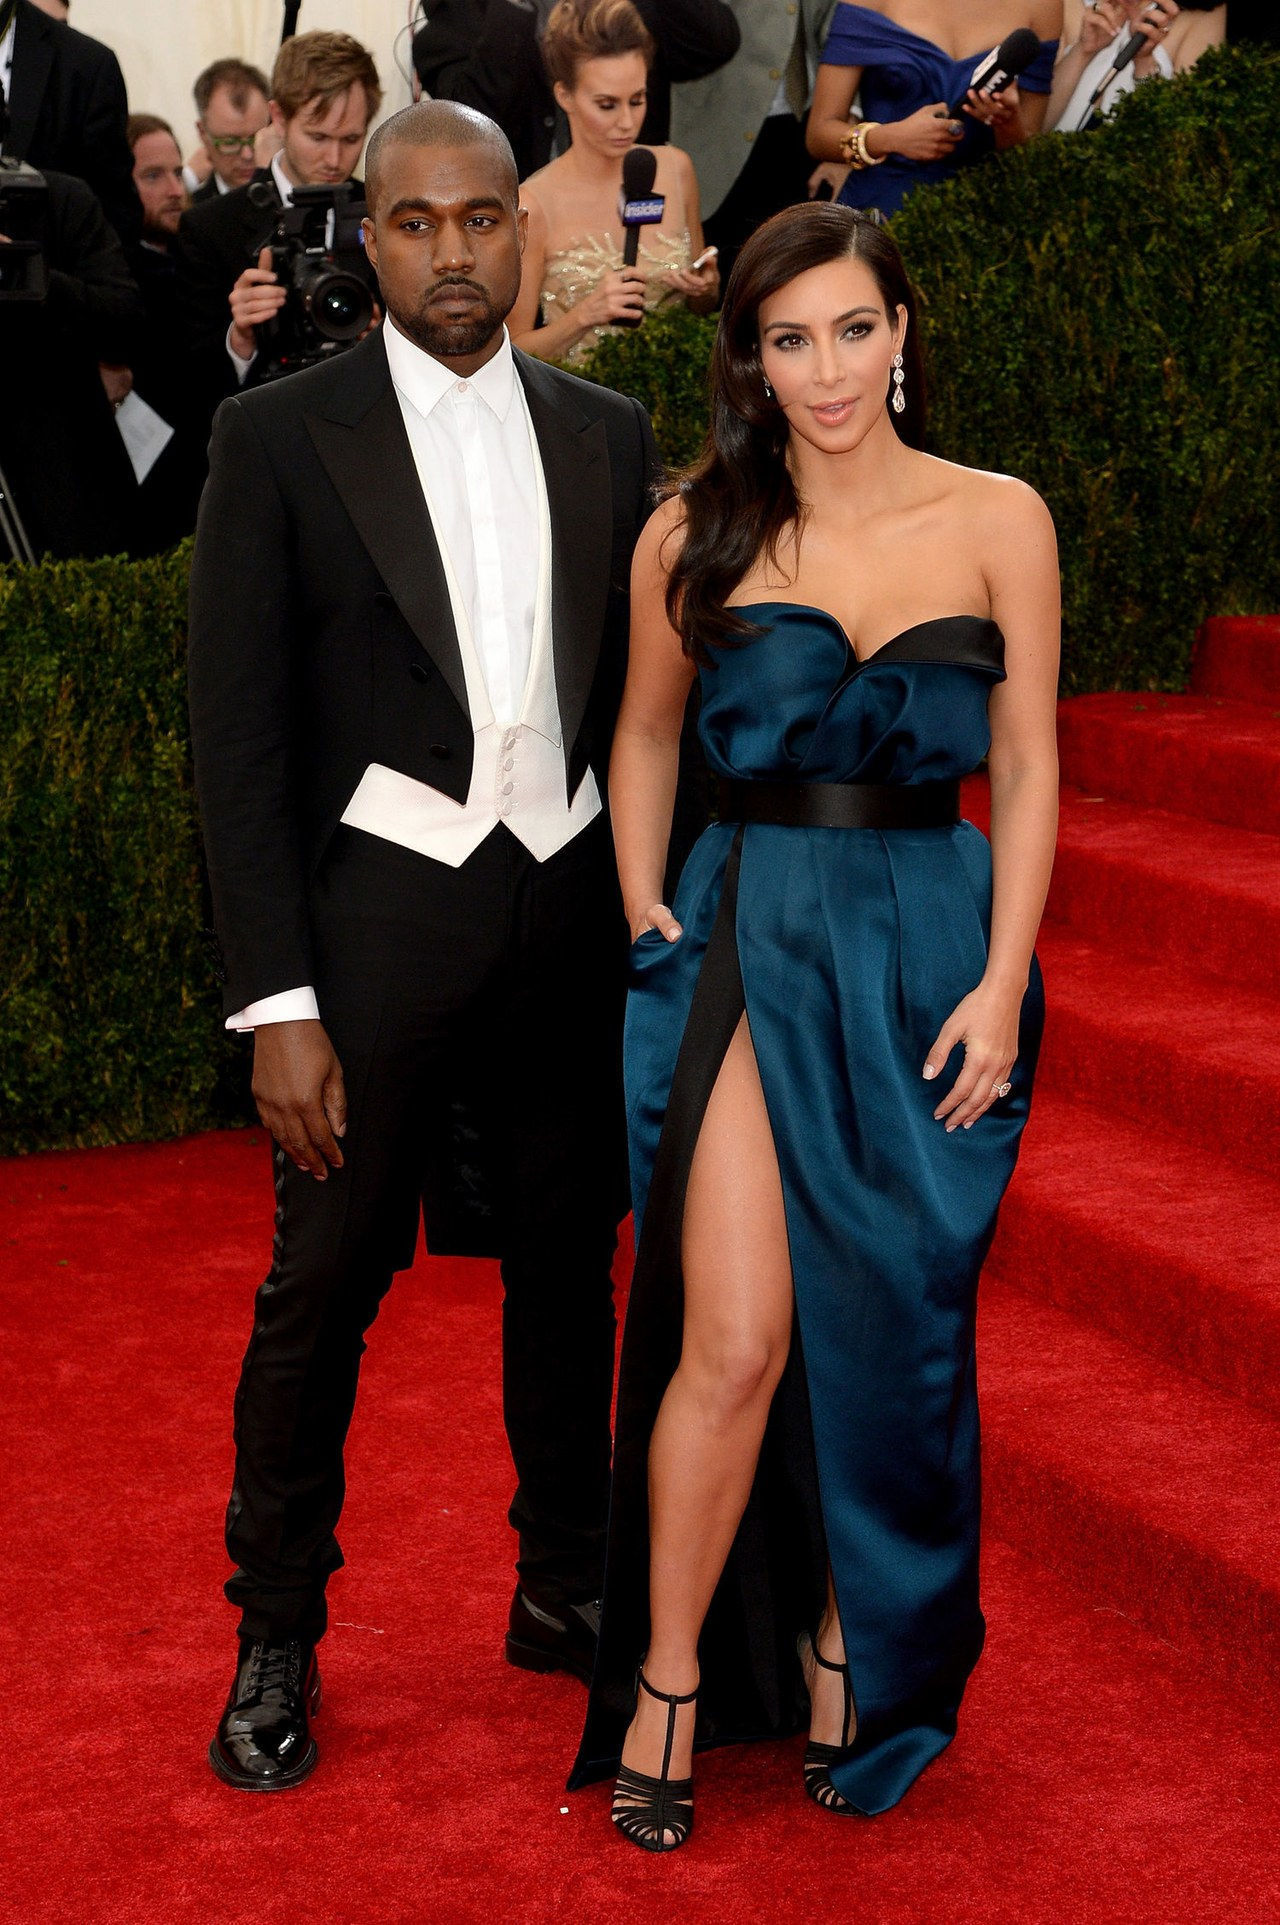 Kanye west kim kardashian dress met gala